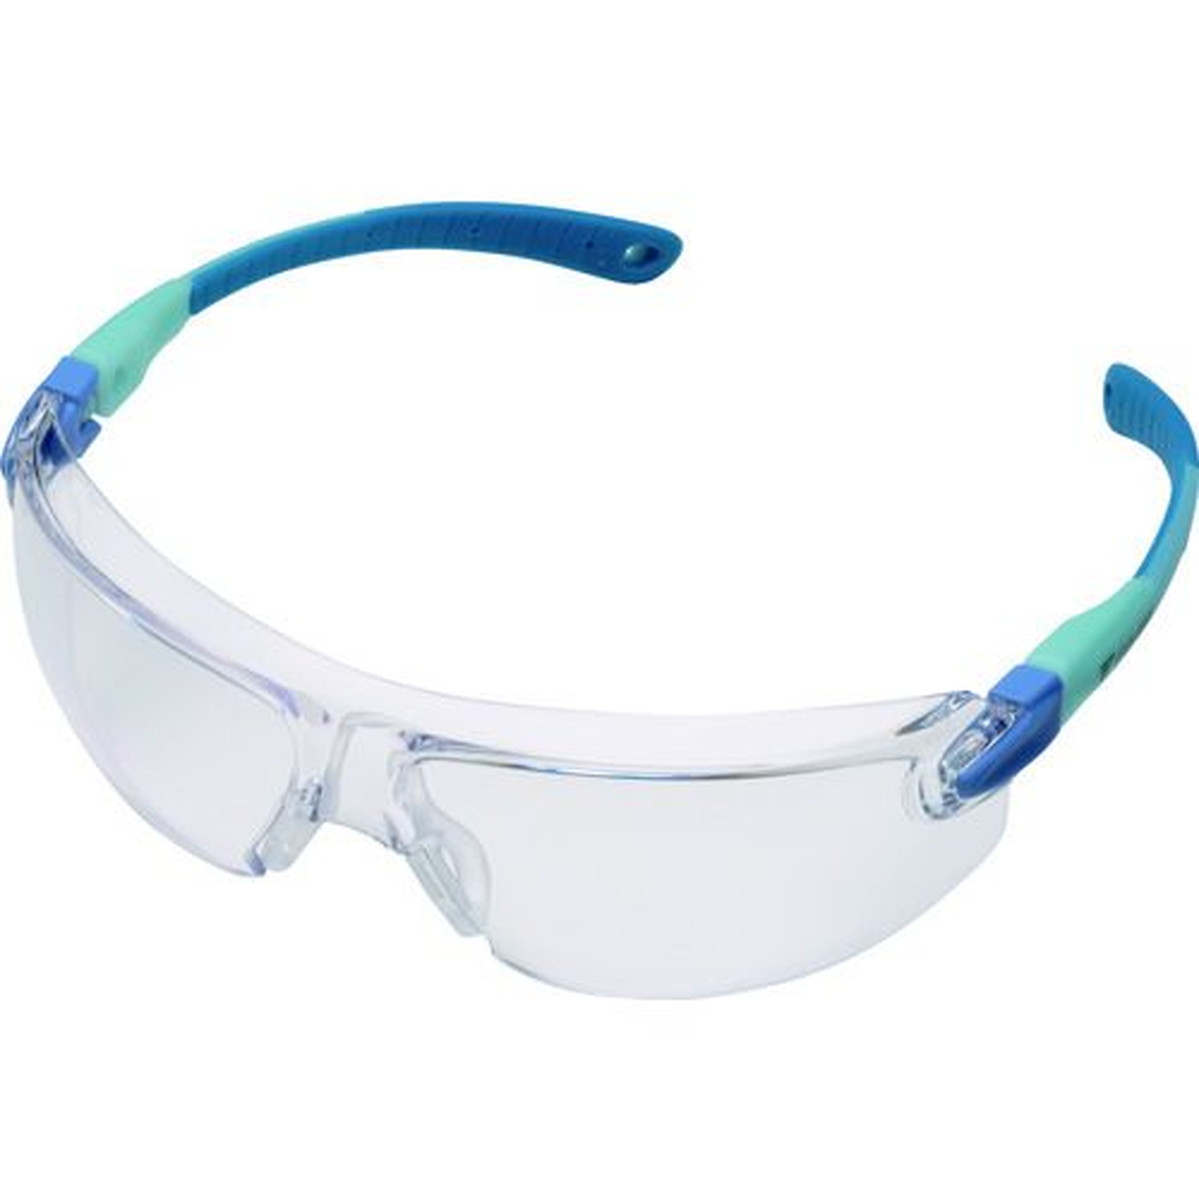 ミドリ安全 小顔用タイプ保護メガネ VS−103F ブルー 1個 (VS-103F-BL)